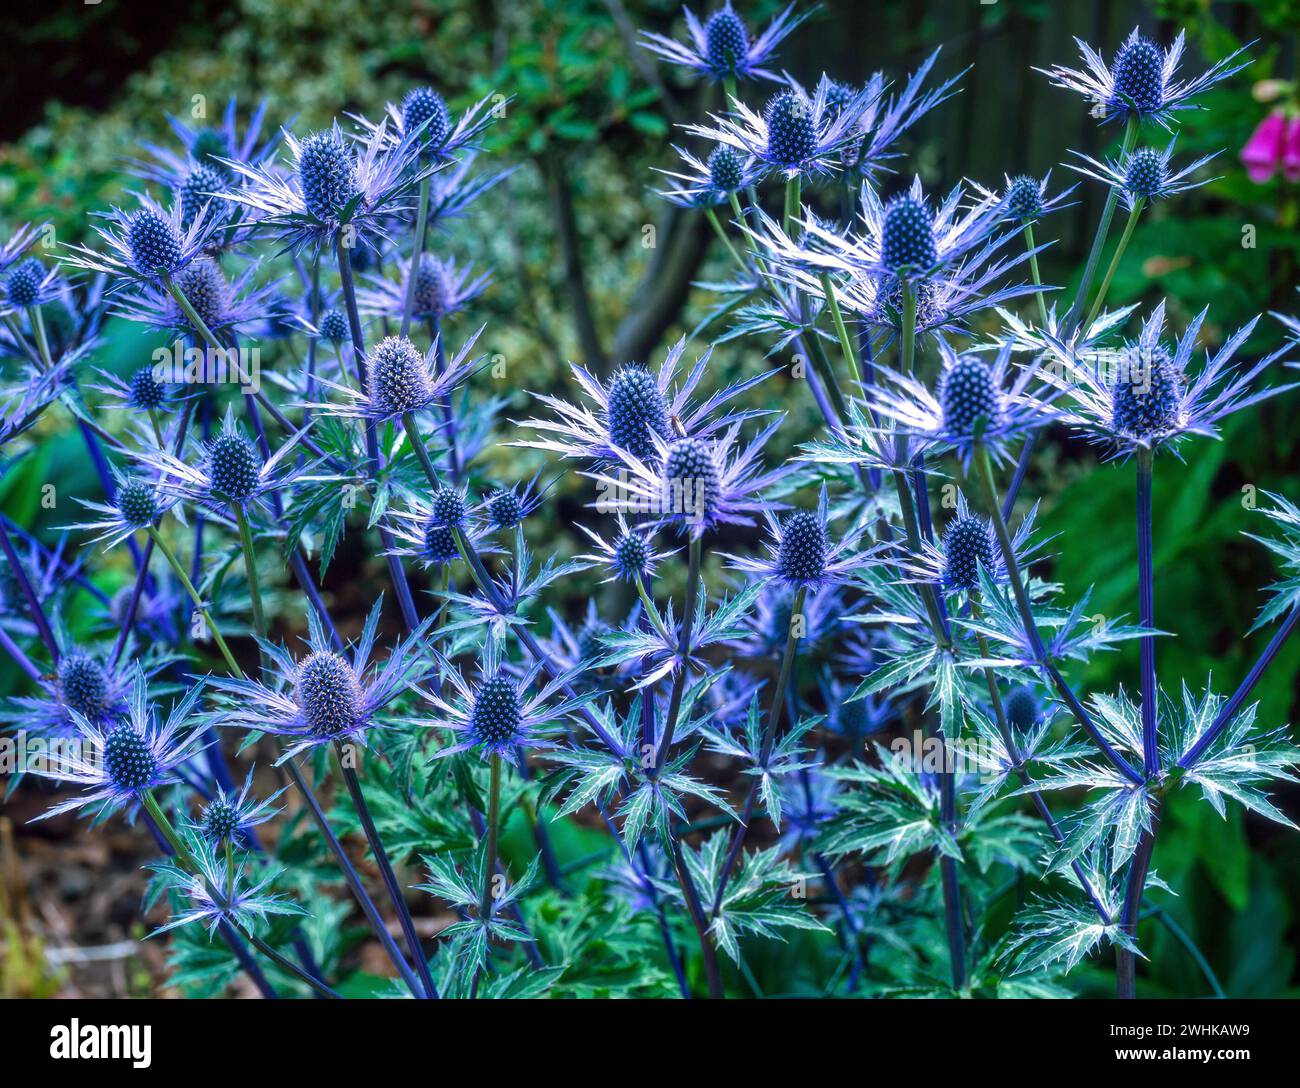 Eryngium blu retroilluminato x zabelii 'Jos Eijking', fiori di cardo sacro al confine con il giardino, Inghilterra, Regno Unito Foto Stock